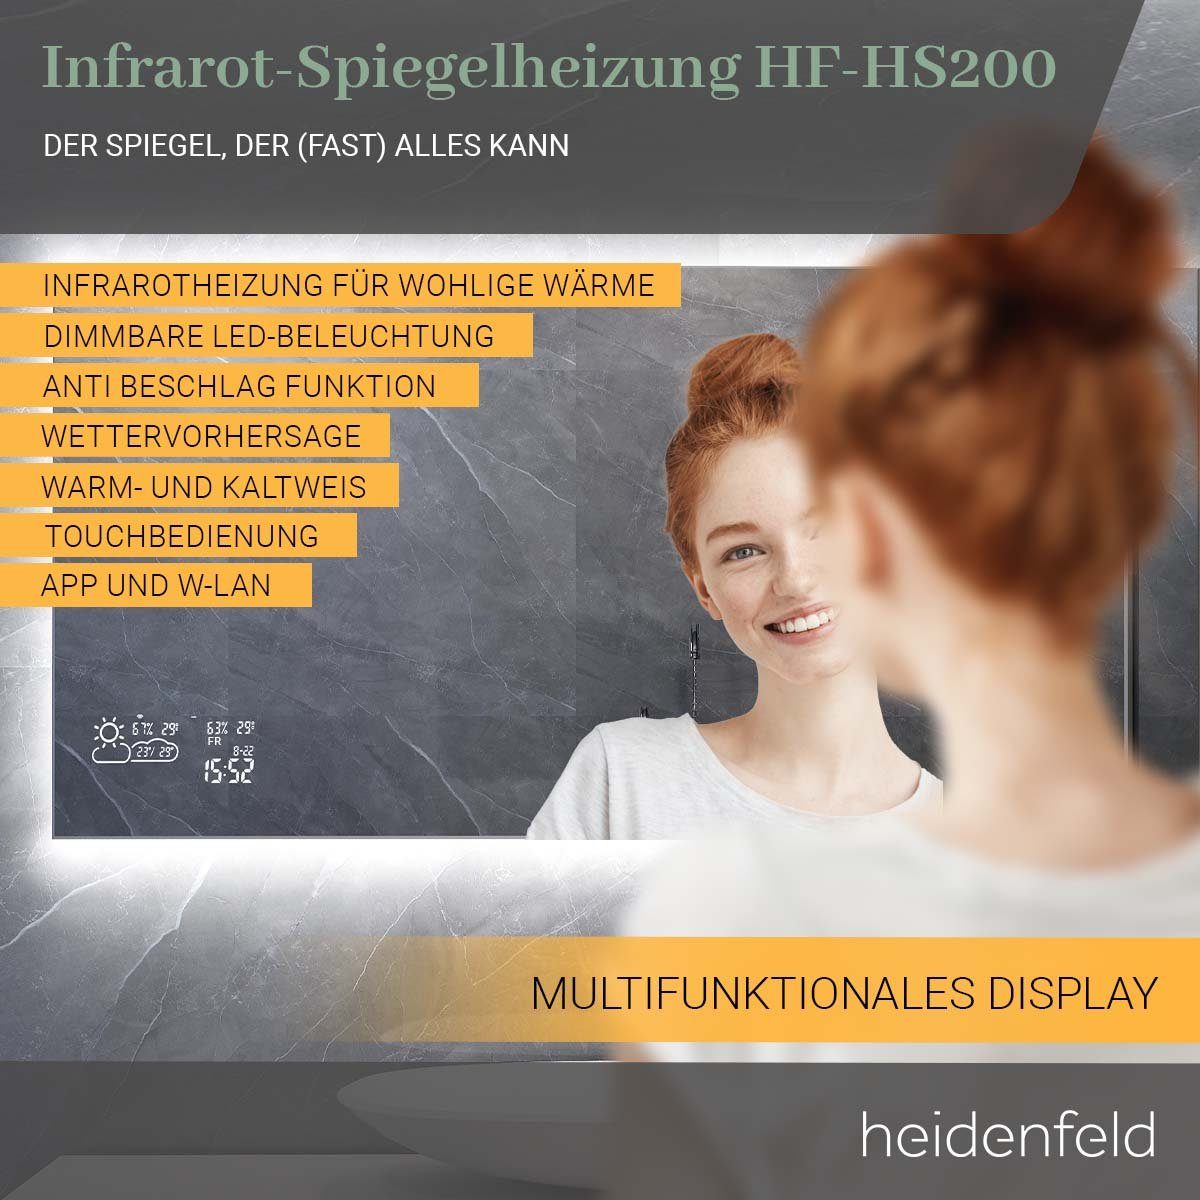 Infrarotheizung - WIFI inkl. Heidenfeld Anti-Beschlag Touchdisplay Spiegelheizung - Garantie, HF-HS200 Rahmenbeleuchtung - - 500 bis 10 Spiegel Jahre Watt